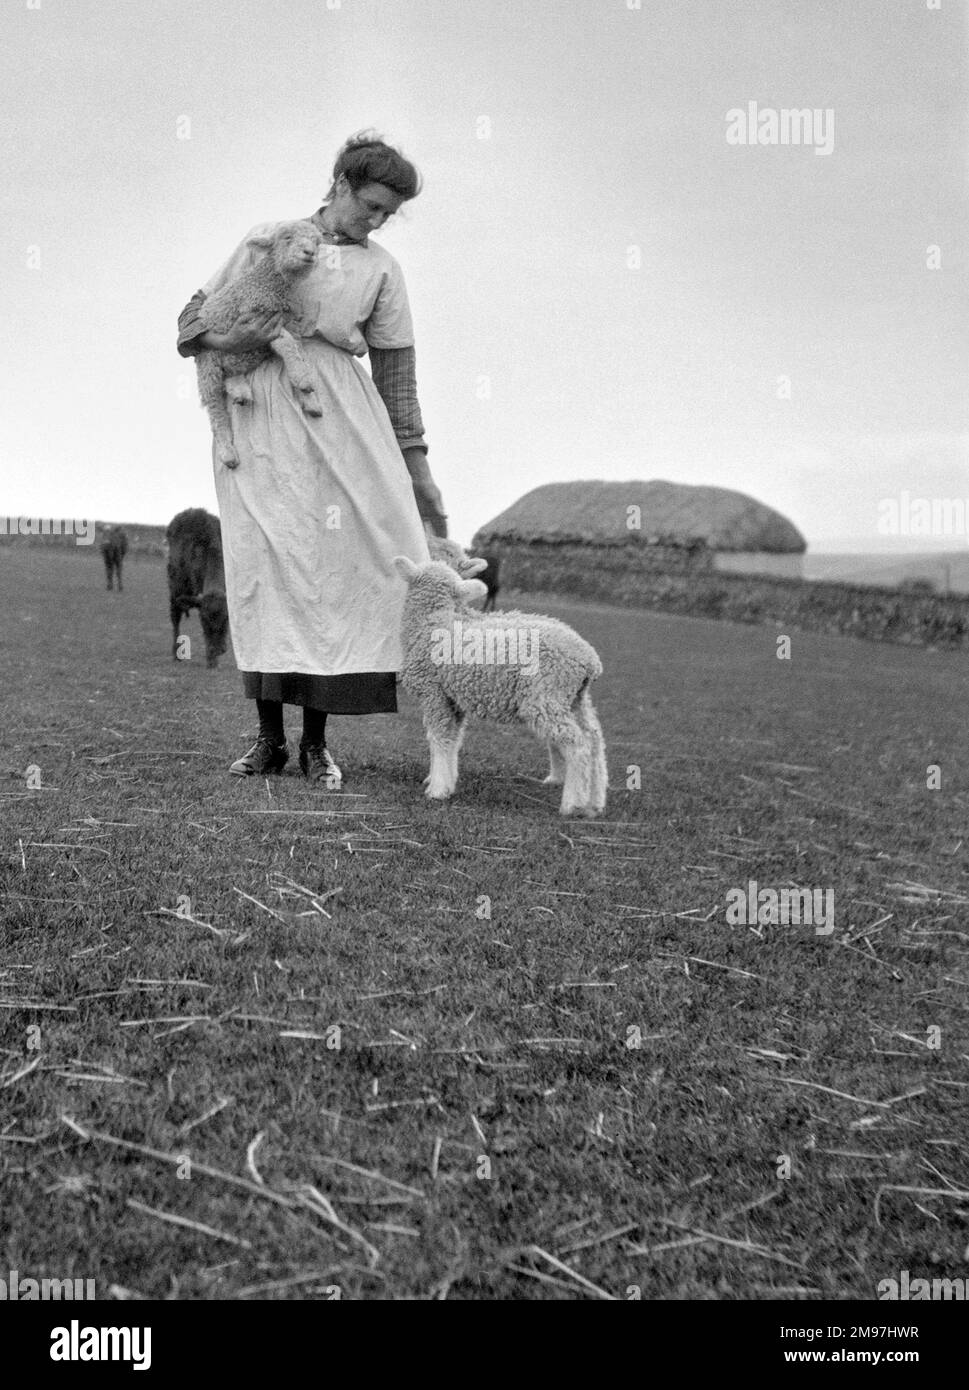 Mujer en una granja con corderos y ganado en un campo. Foto de stock